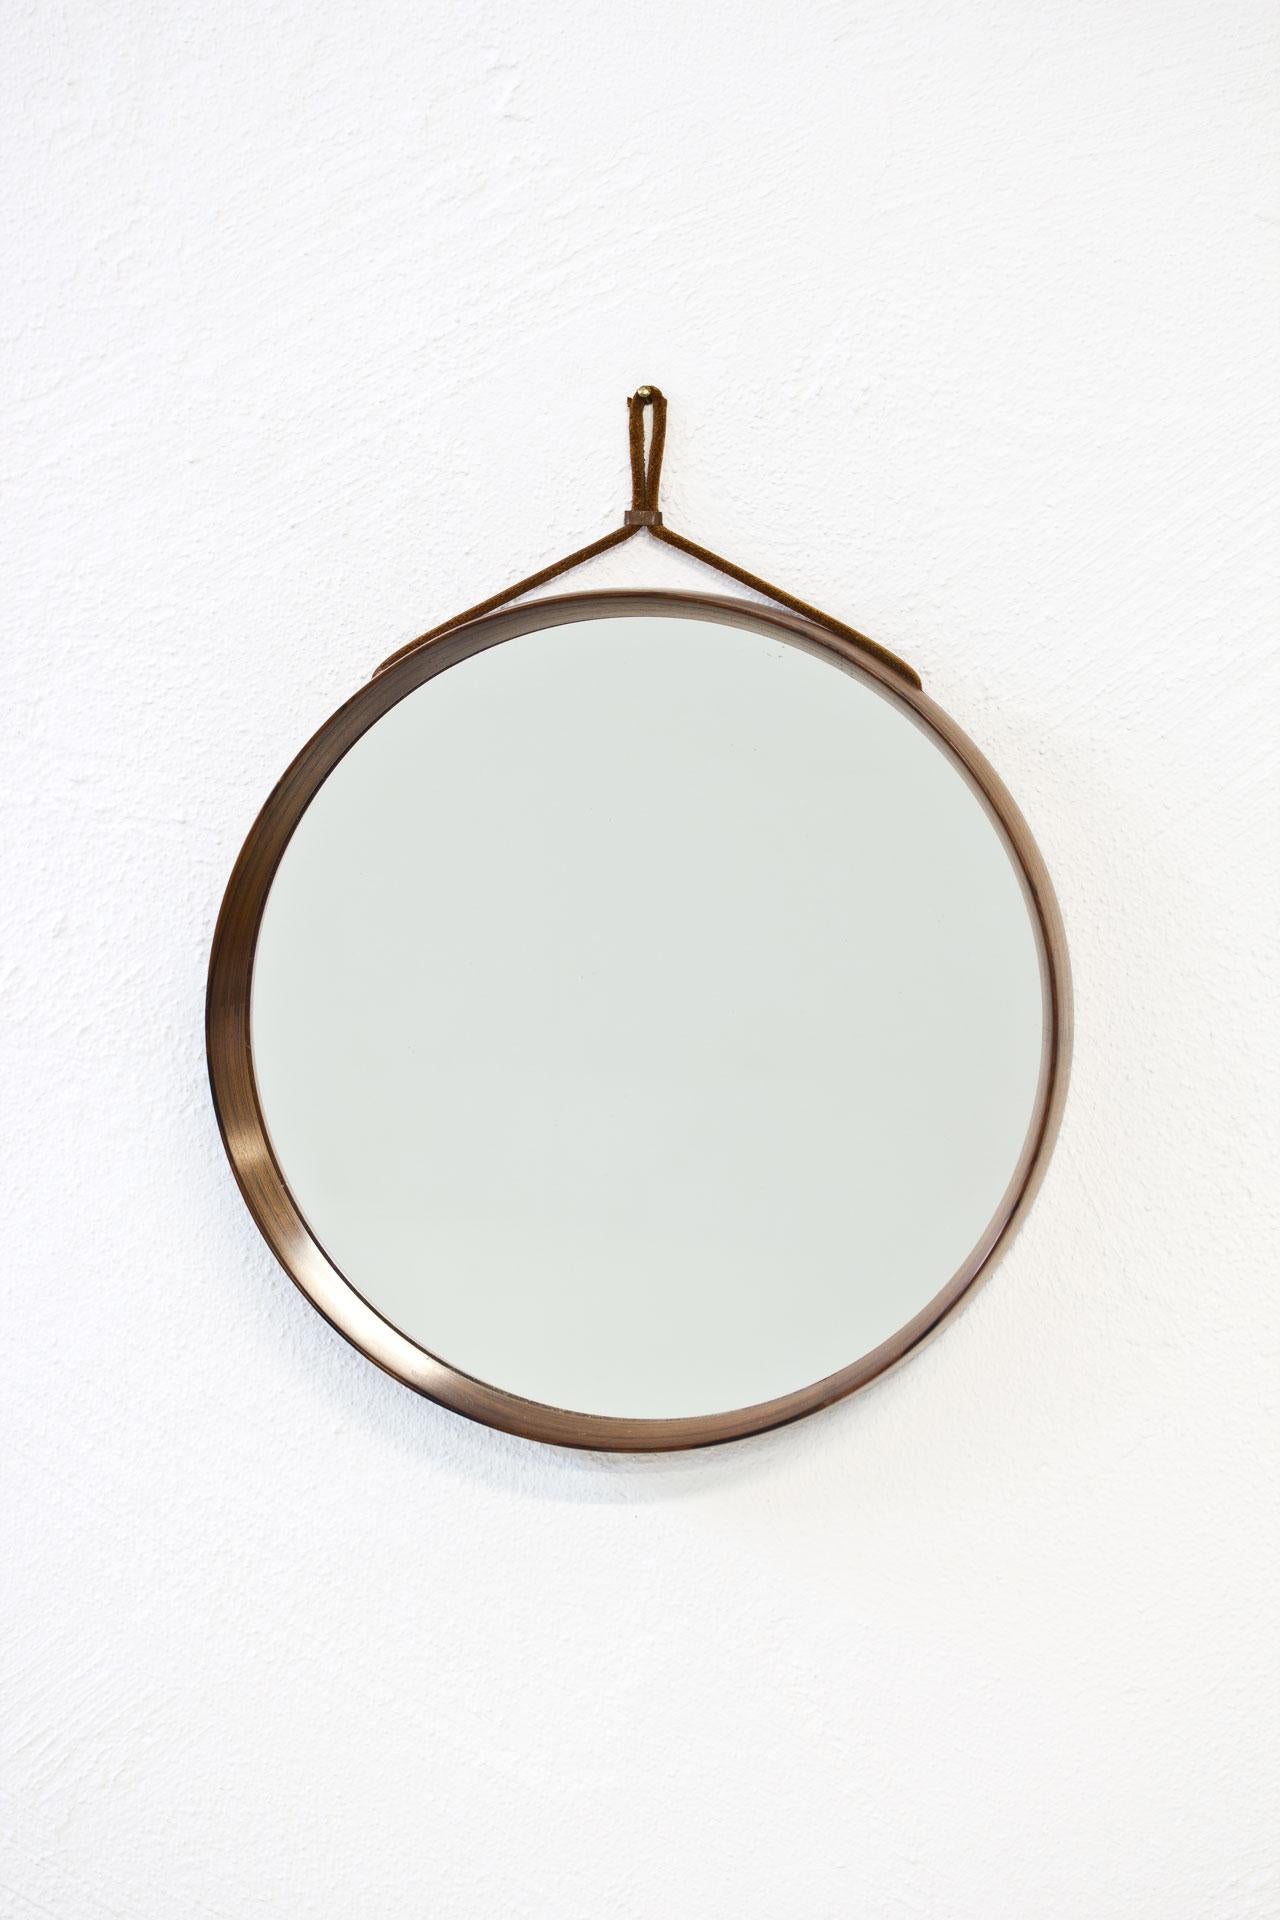 Scandinavian Modern Rosewood Round Wall Mirror by Luxus, Sweden